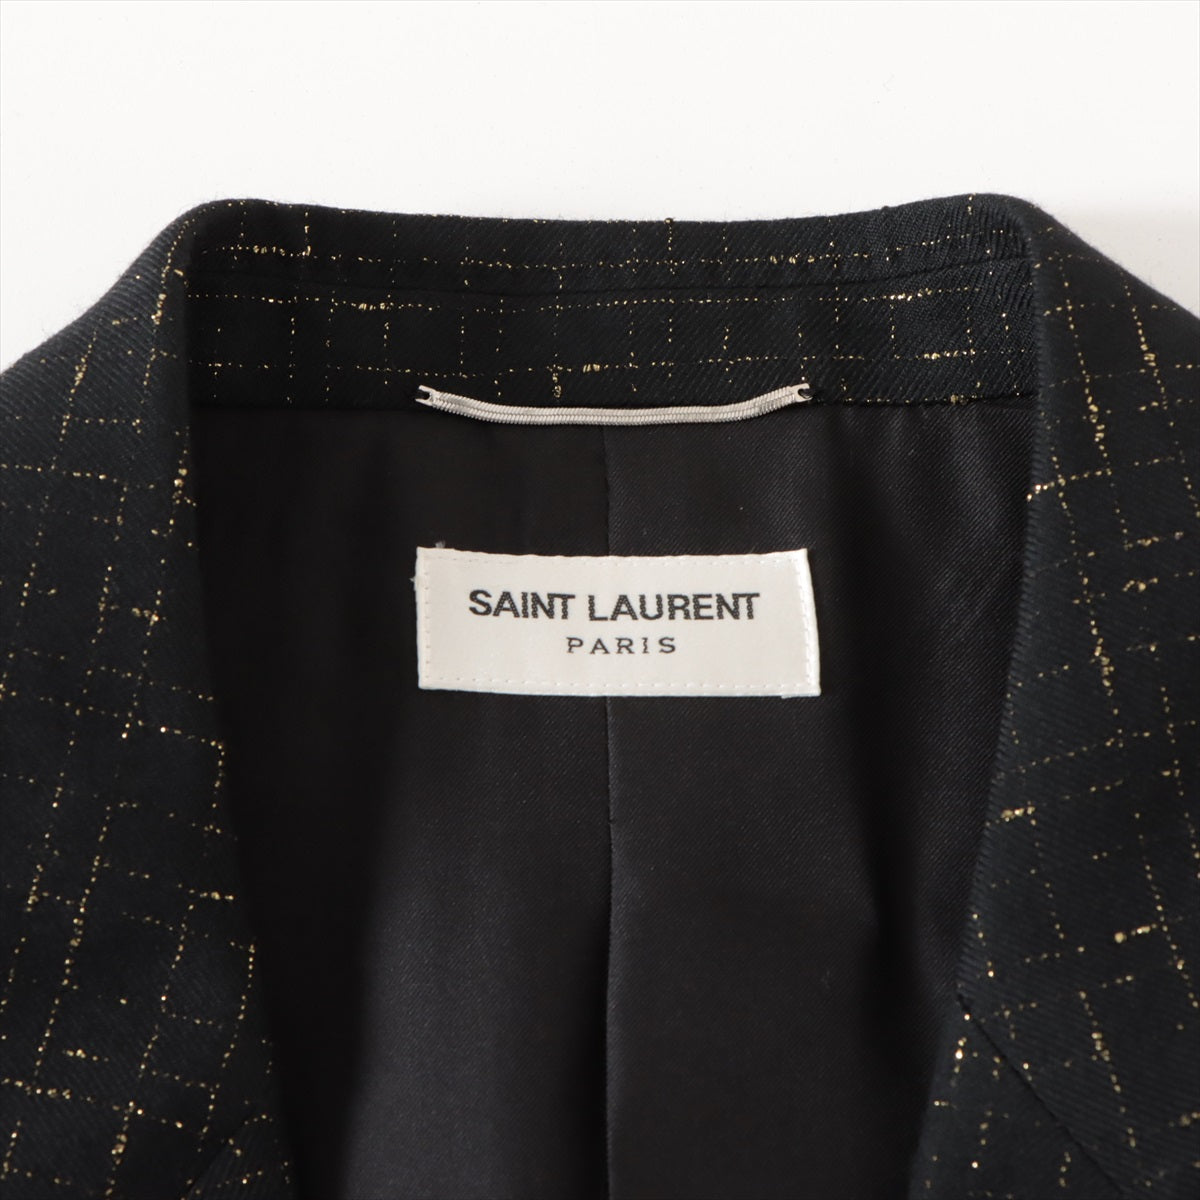 Saint Laurent Paris Wool & nylon Jacket 56 Men's Black